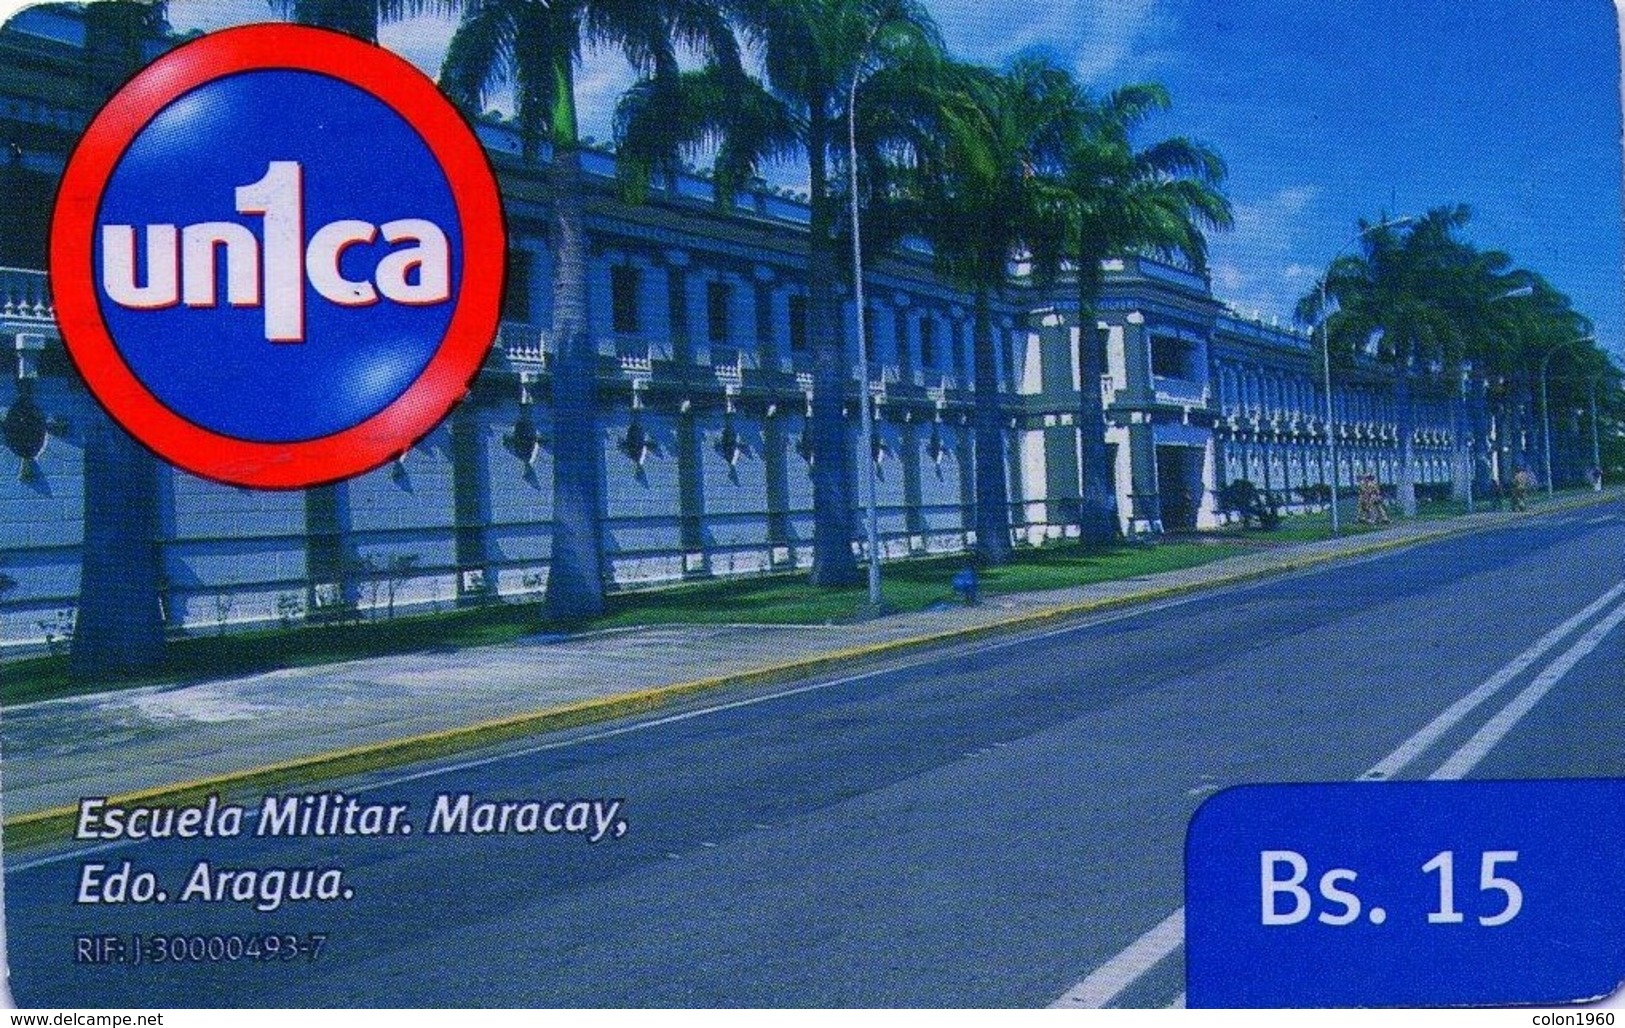 VENEZUELA, GSM-RECARGA. Escuela Militar, Maracay. Edo. Aragua. UI091121. VE-UNICA-U-091121. (280). - Armada